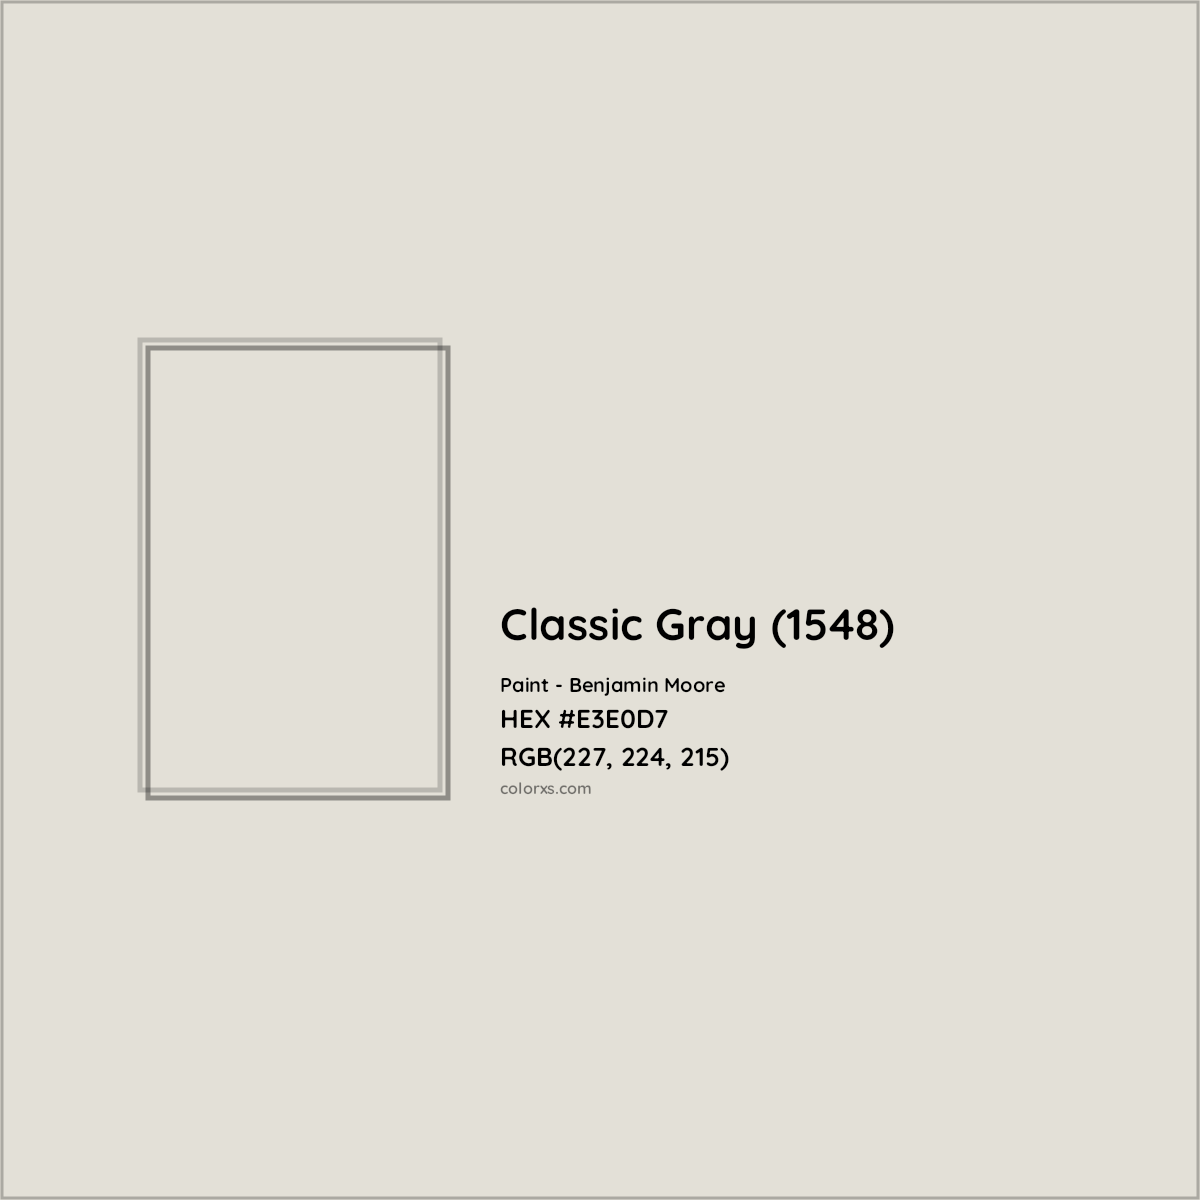 HEX #E3E0D7 Classic Gray (1548) Paint Benjamin Moore - Color Code